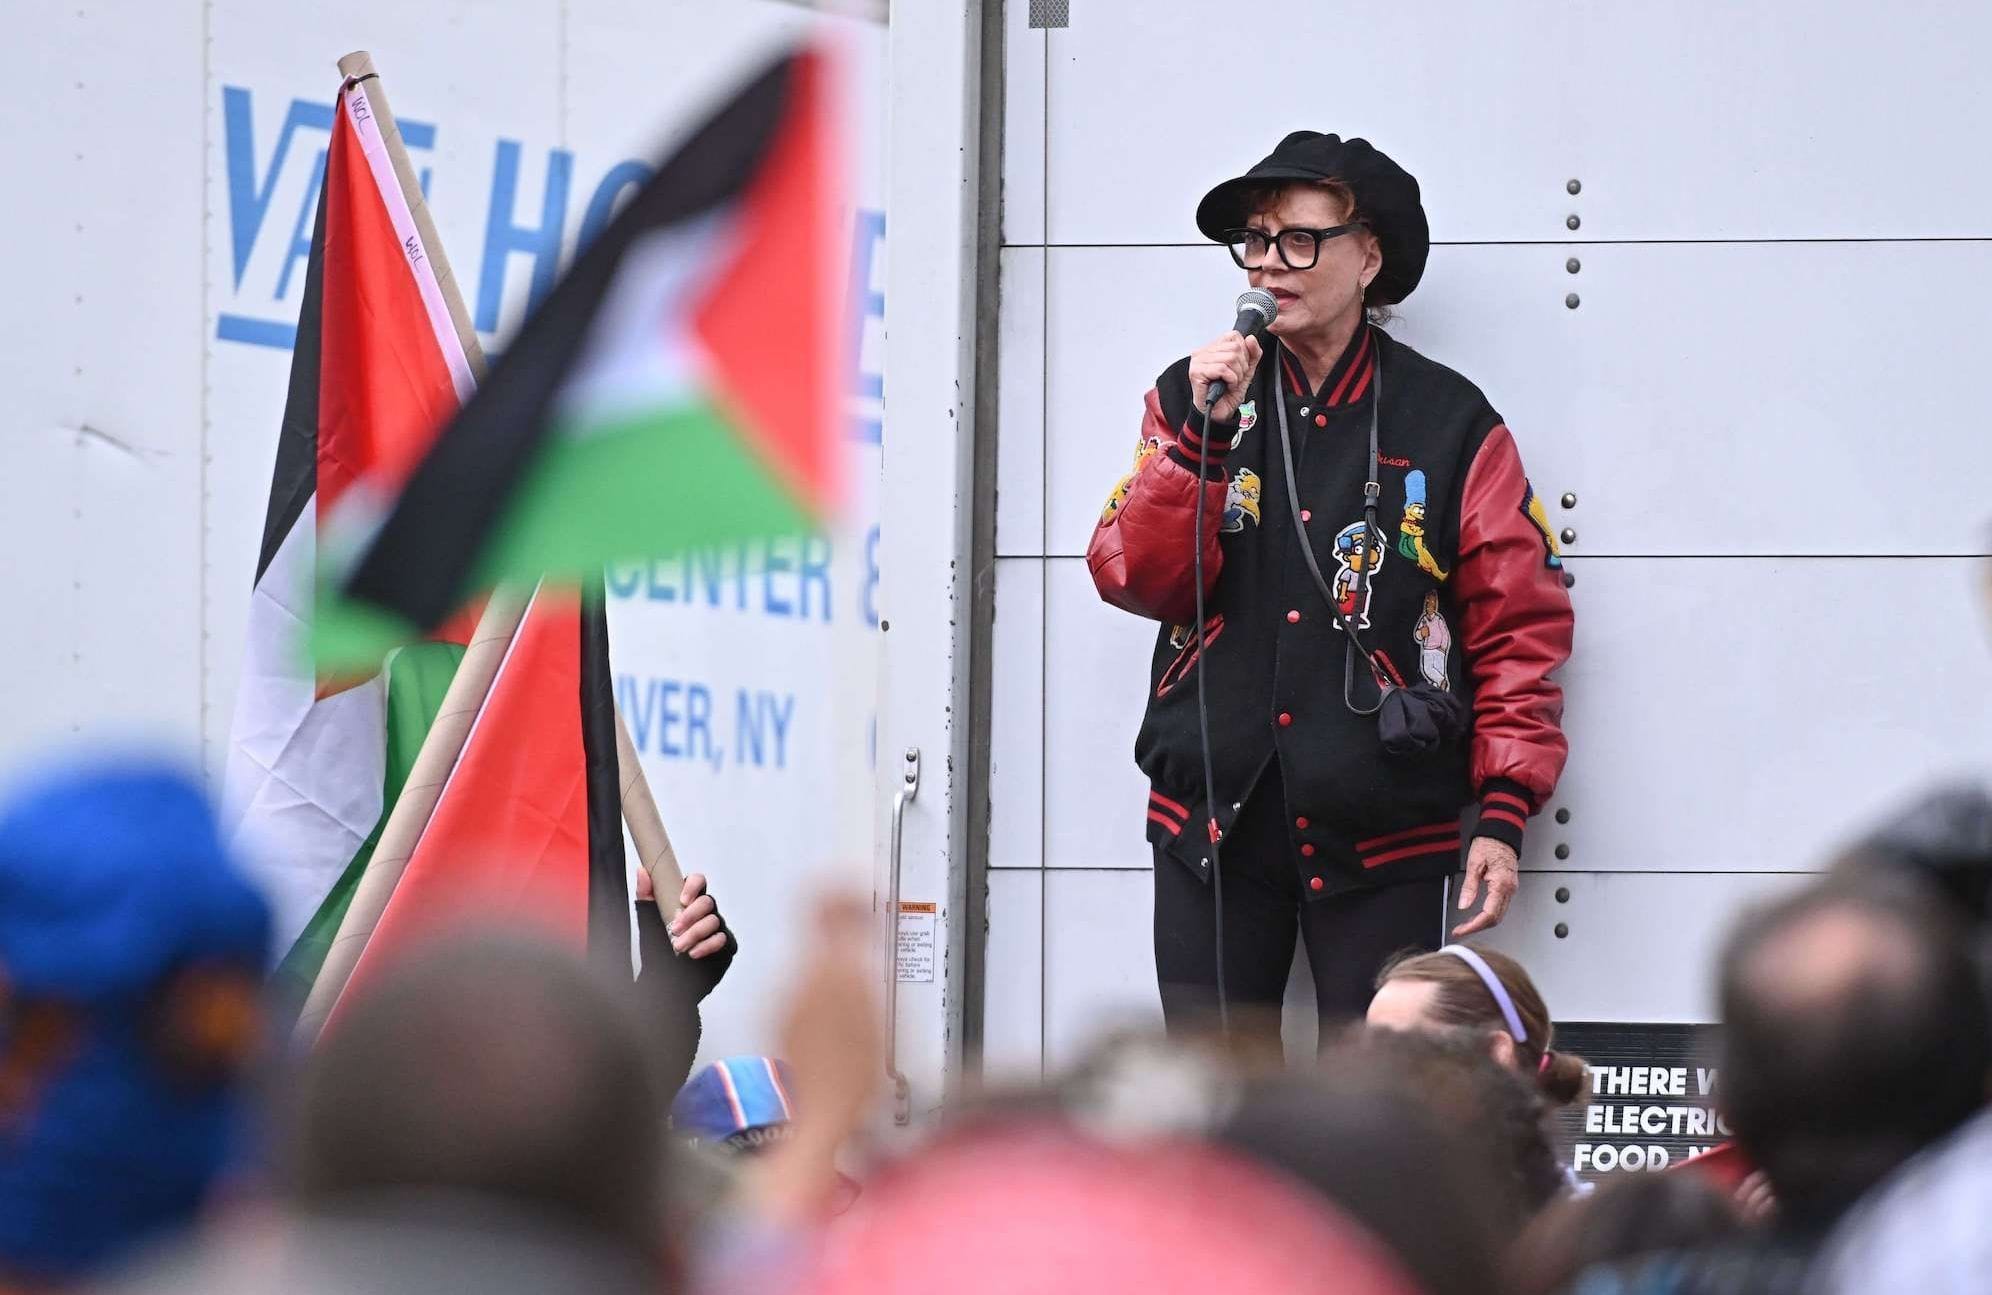 ¿Nueva lista negra? El castigo de Hollywood hacia quienes apoyan a Palestina